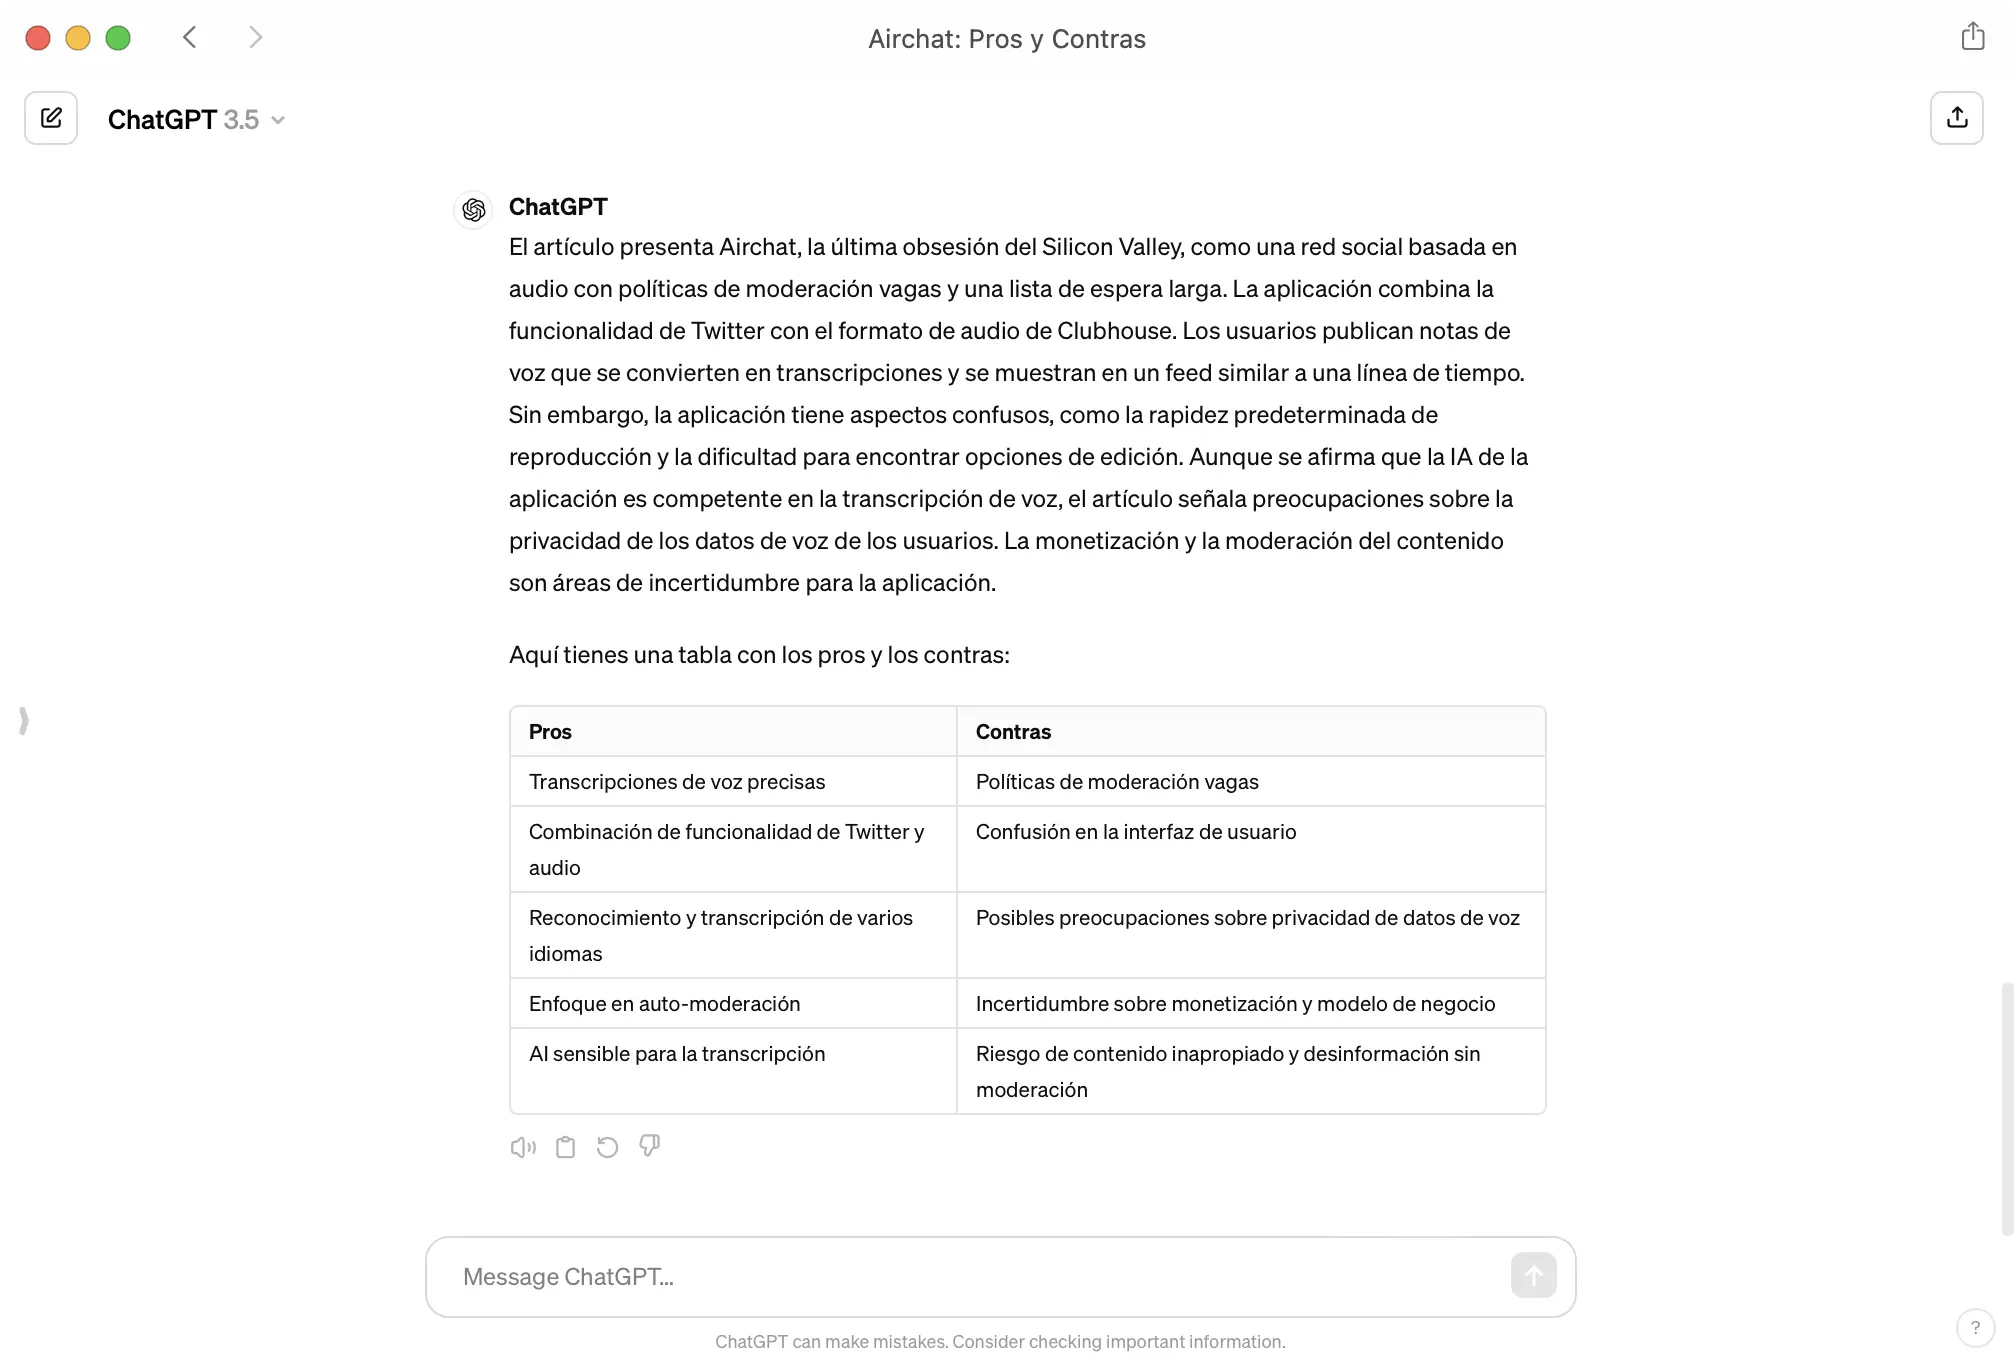 Captura de una respuesta de ChatGPT listando las ventajas e inconvenientes de AirChat